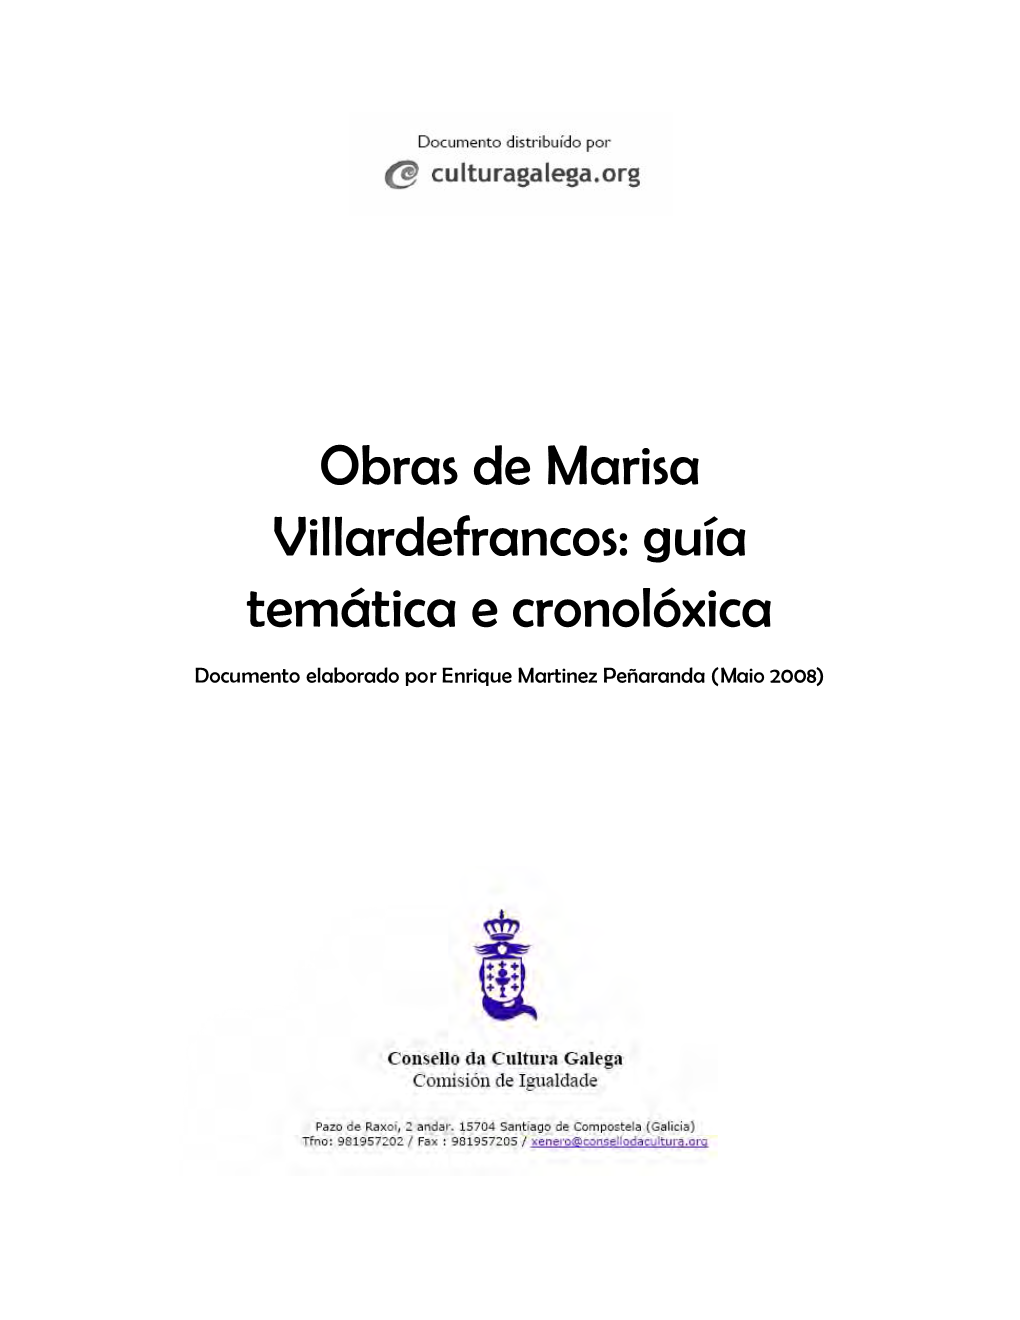 Obras De Marisa Villardefrancos: Guía Temática E Cronolóxica